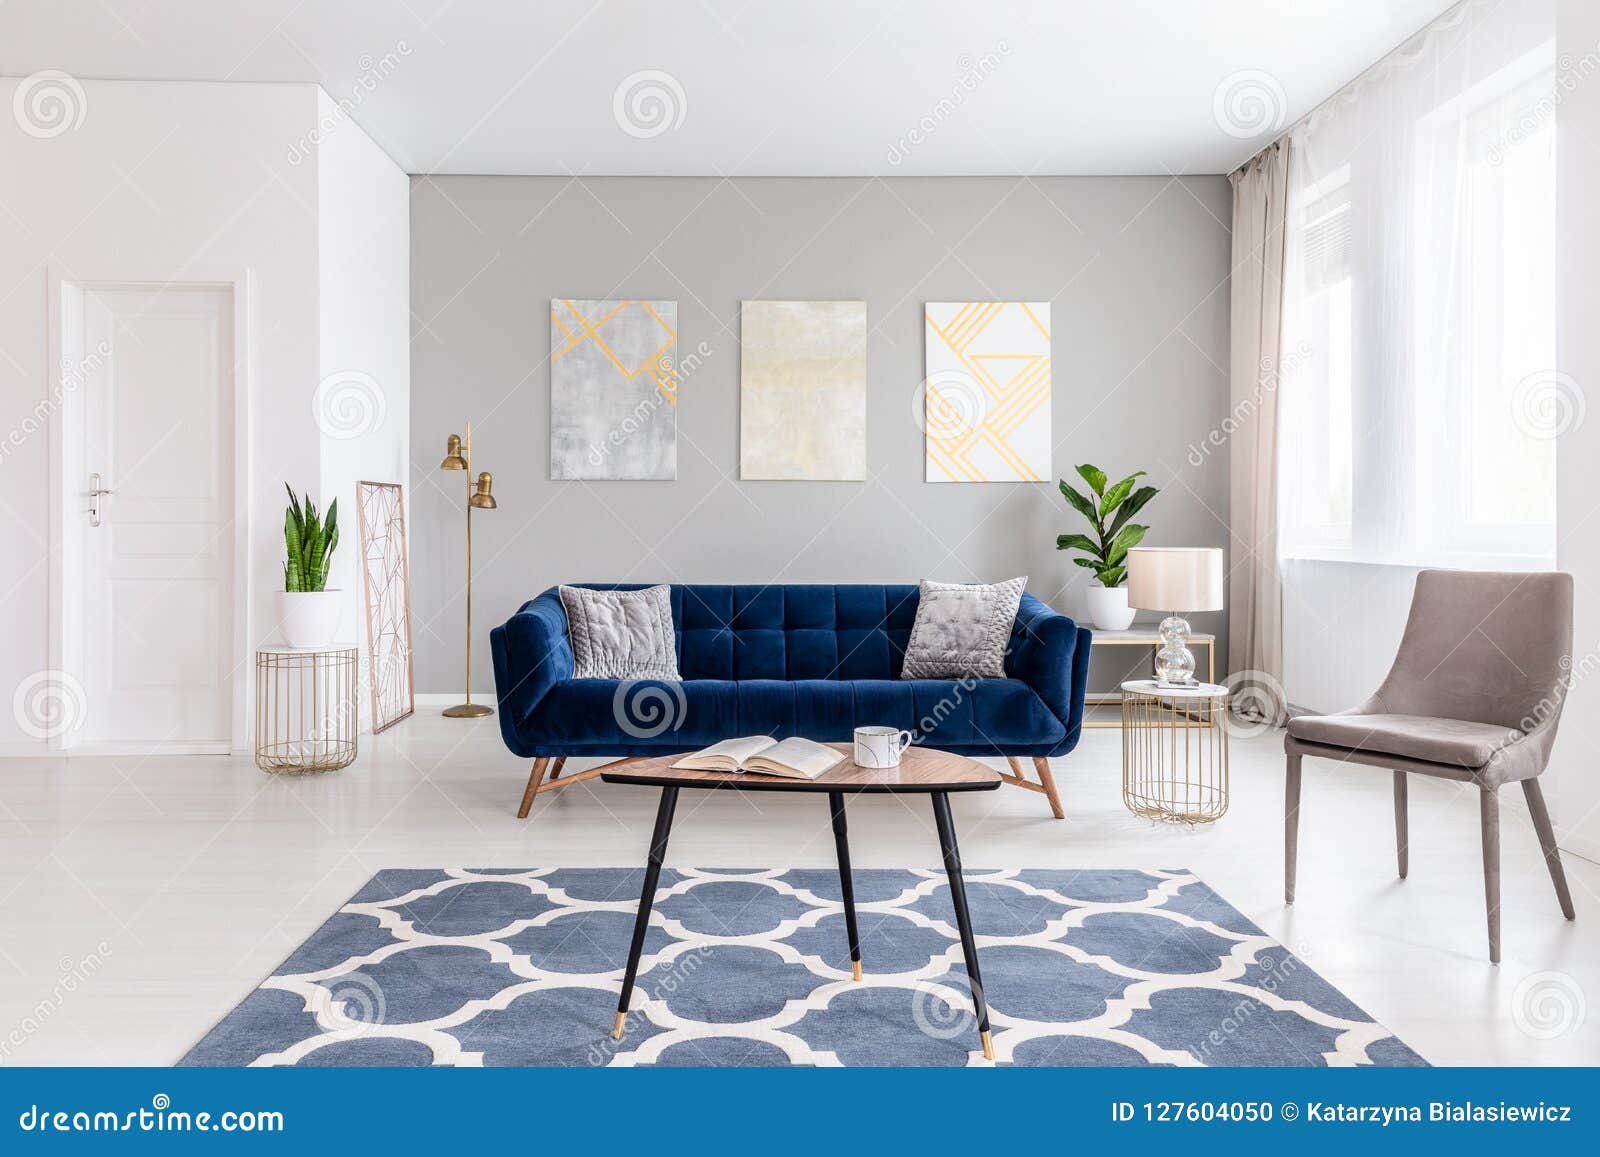 Estilo Moderno De Sala De Estar Interior Con Muebles Azules Del Sofá Fotos de stock - Fotos libres de regalías de Dreamstime